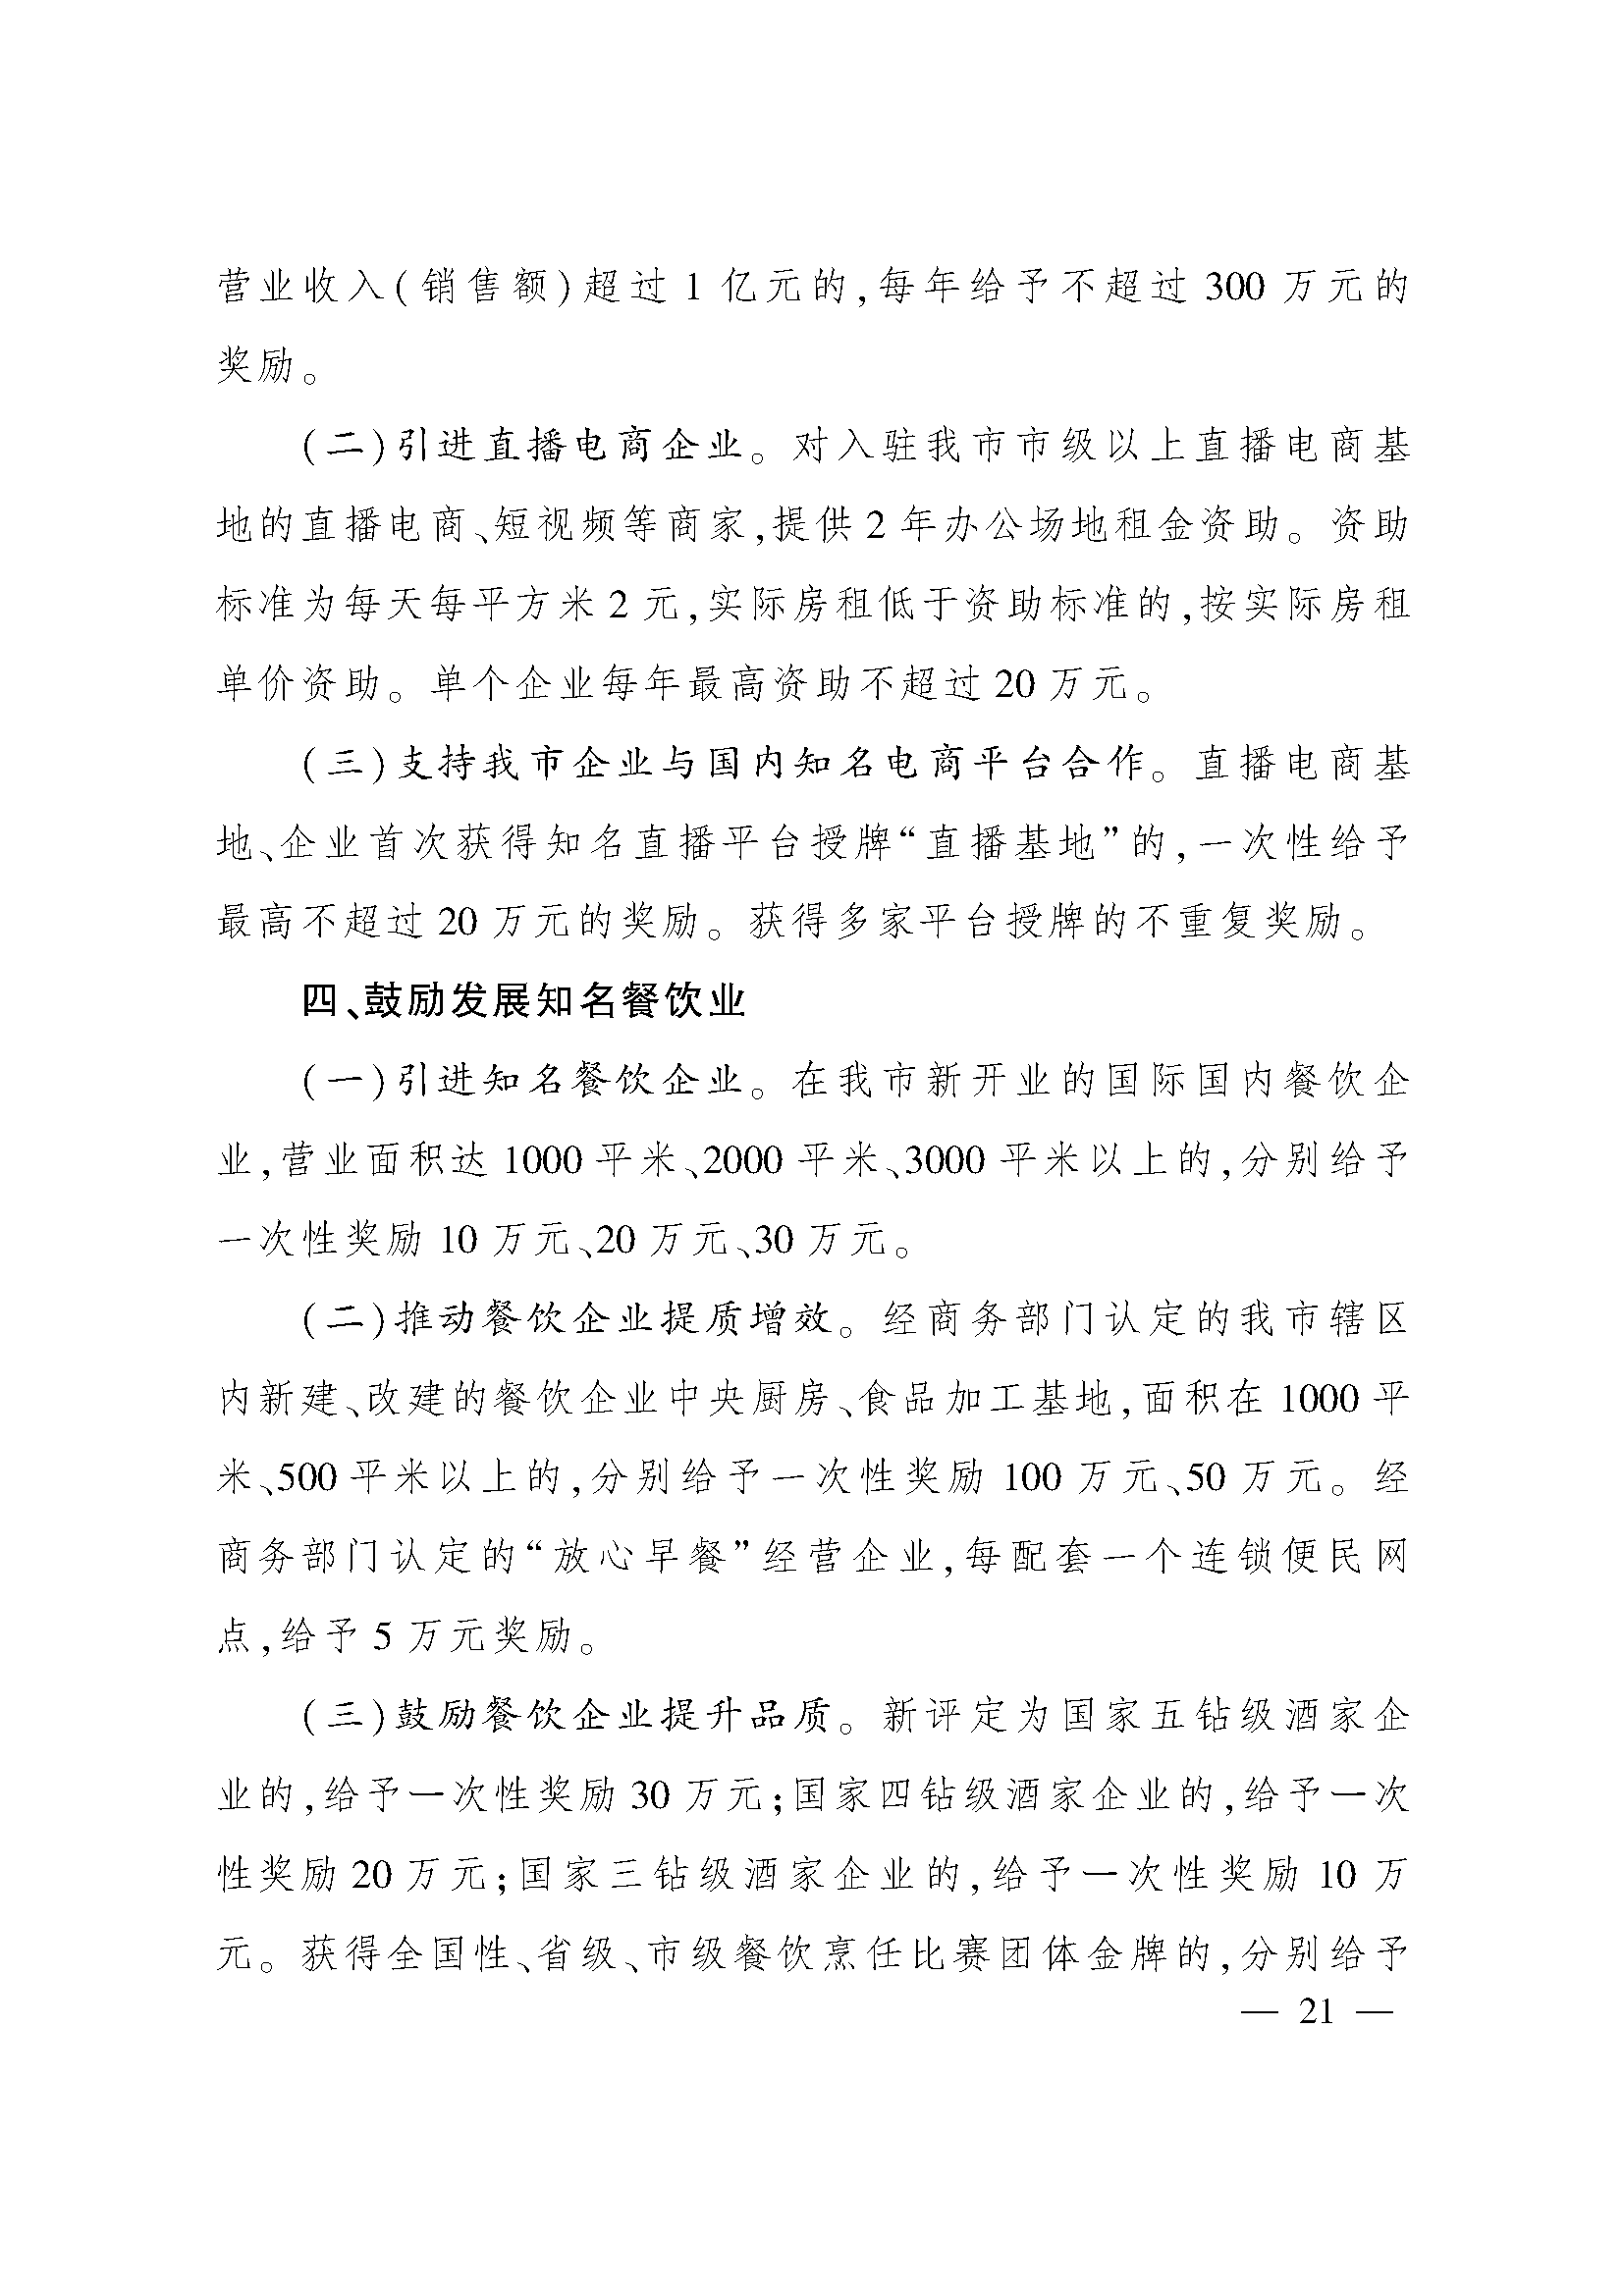 太原市人民政府办公室关于印发太原市招商引资若干措施的通知(图21)